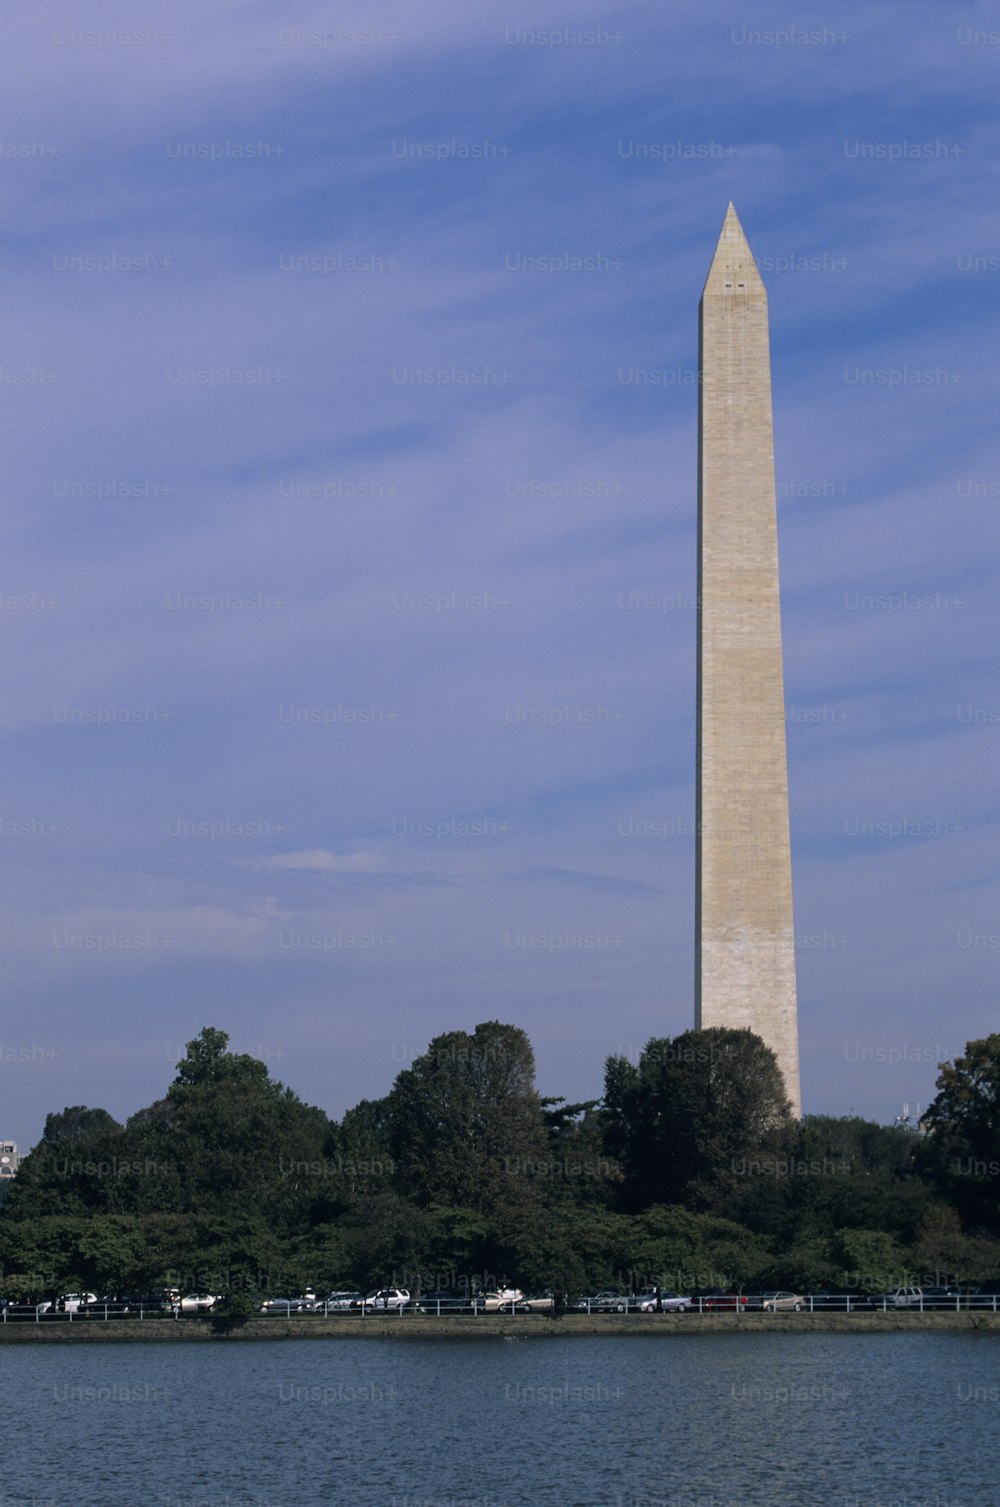 El Monumento a Washington en Washington, DC se ve desde el otro lado del agua